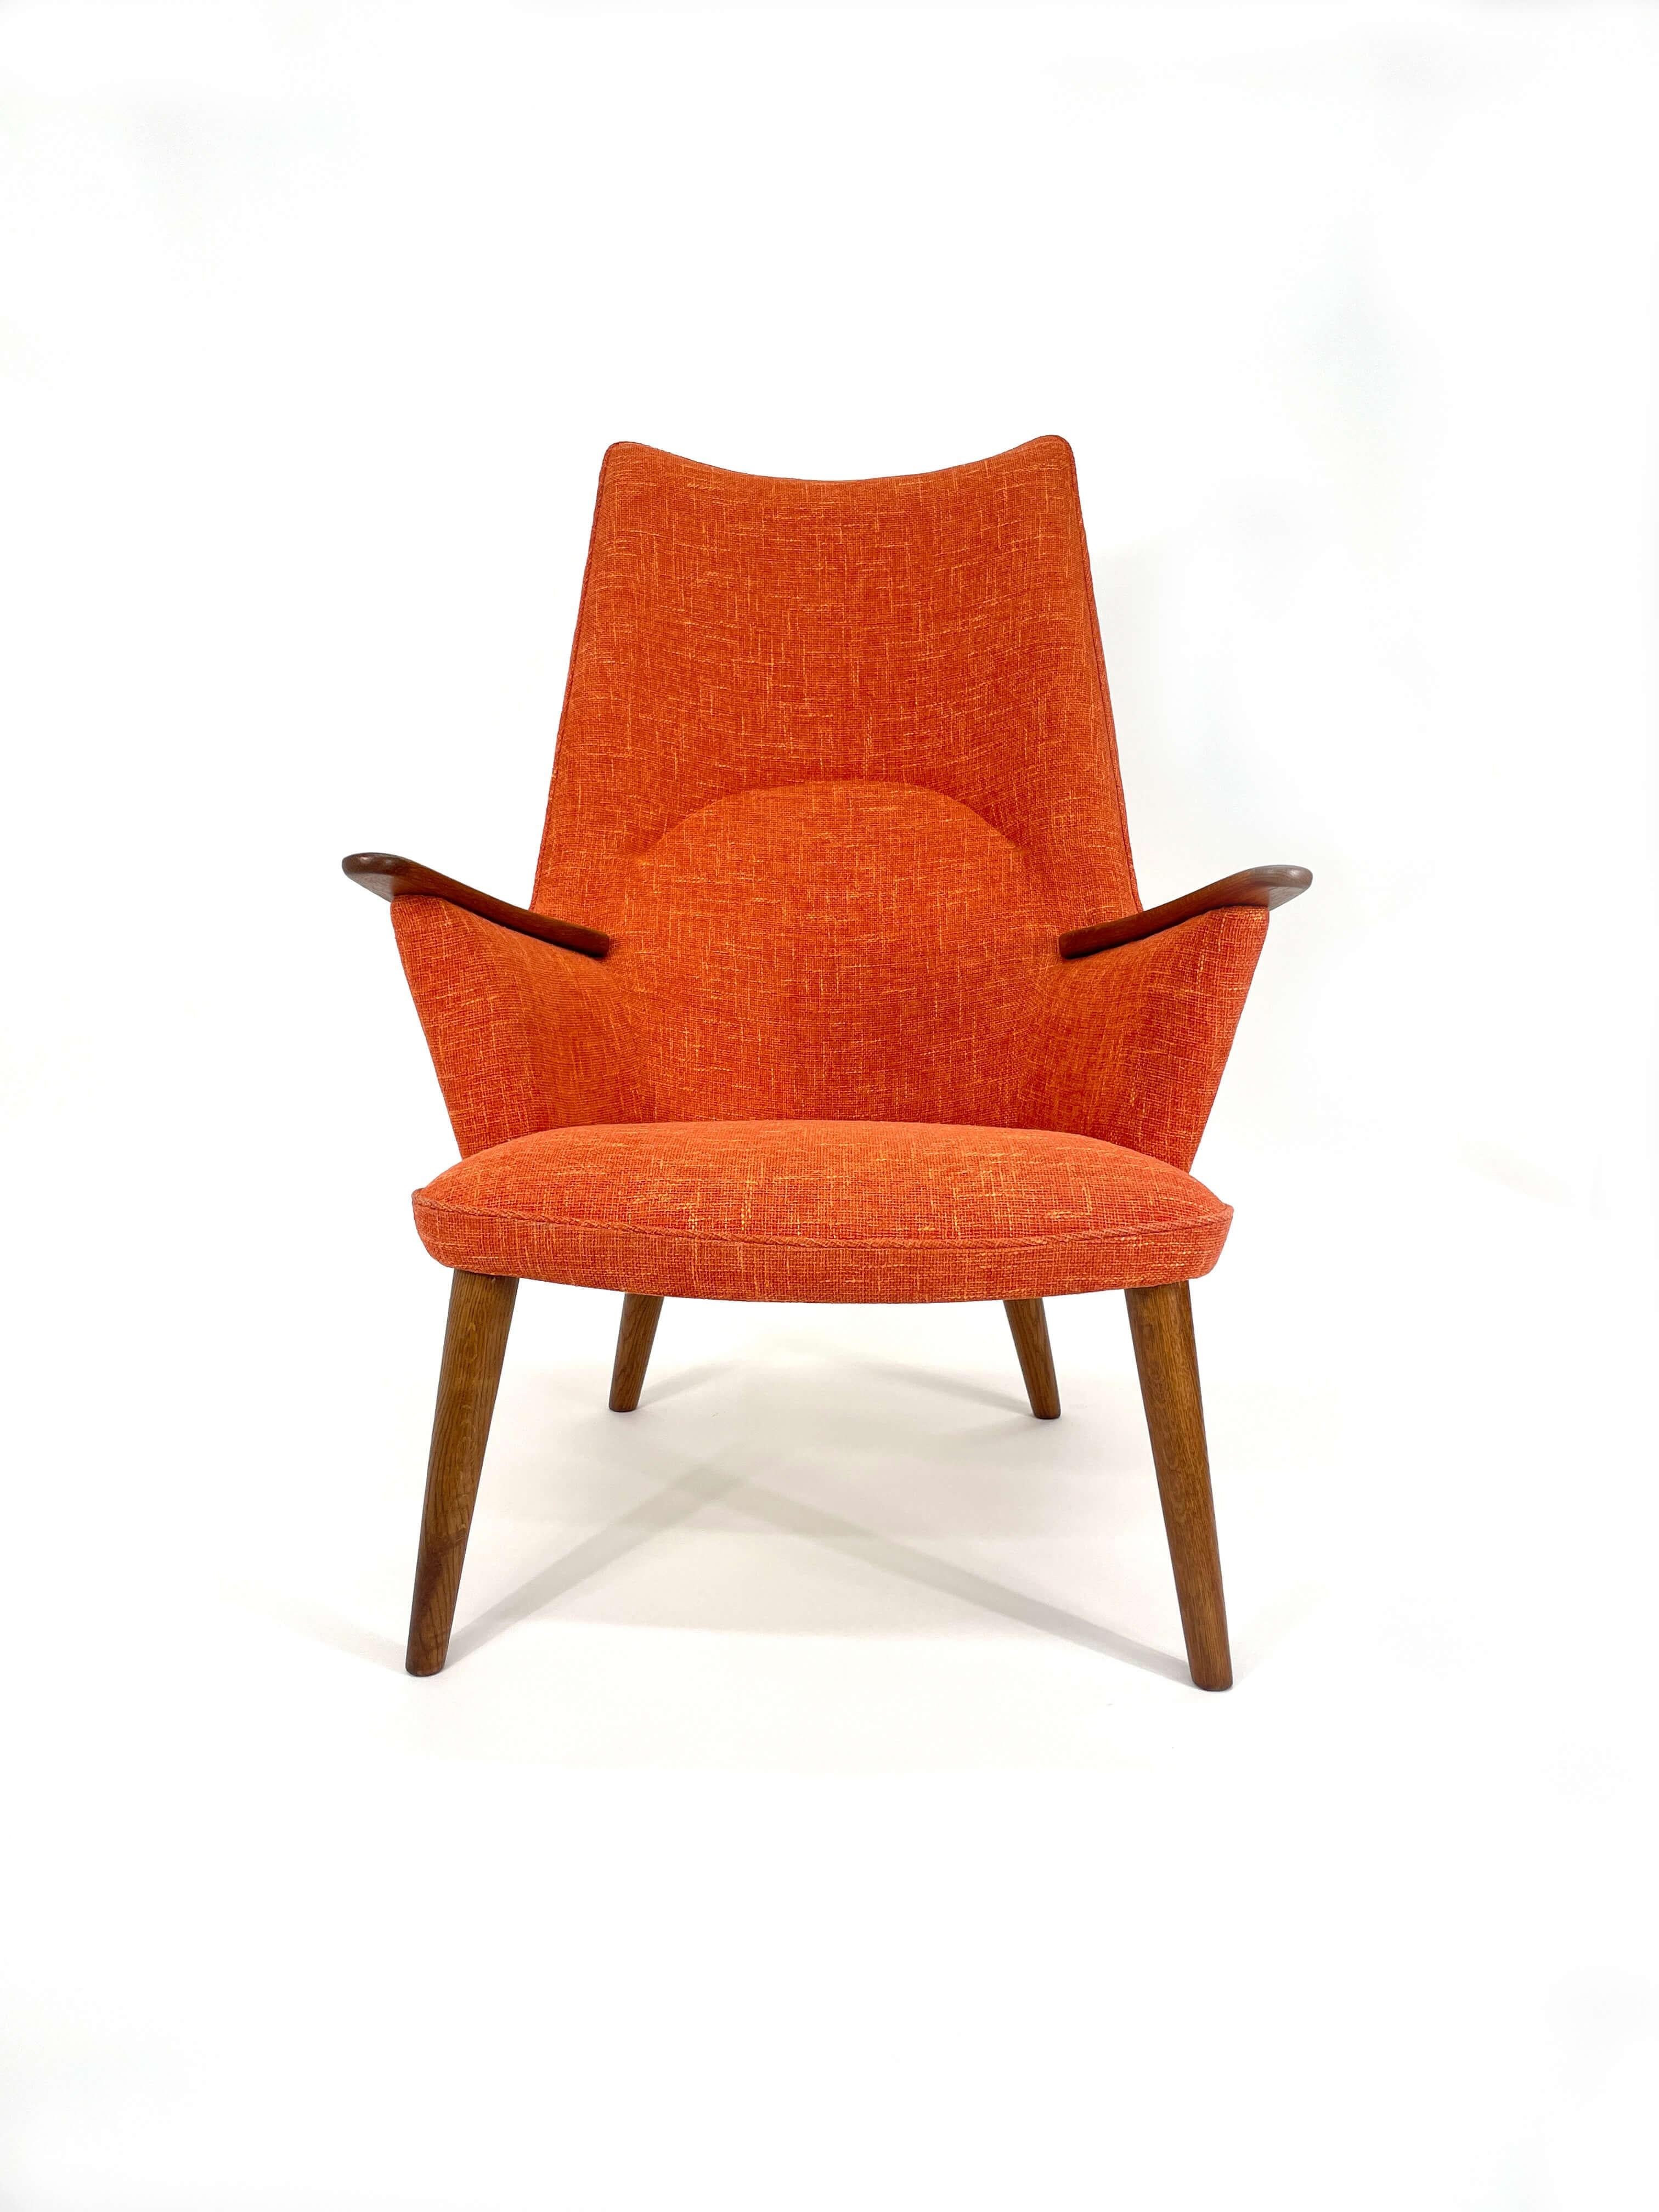 Der AP-27, auch bekannt als Mama Bear Stuhl, wurde 1957 von Hans Wegner entworfen. Dieser ikonische Stuhl hat eine hohe Rückenlehne, Eichenholzfüße und schön geformte Armlehnen. Wie jeder Wegner-Stuhl ist er ergonomisch geformt und superbequem. Neu